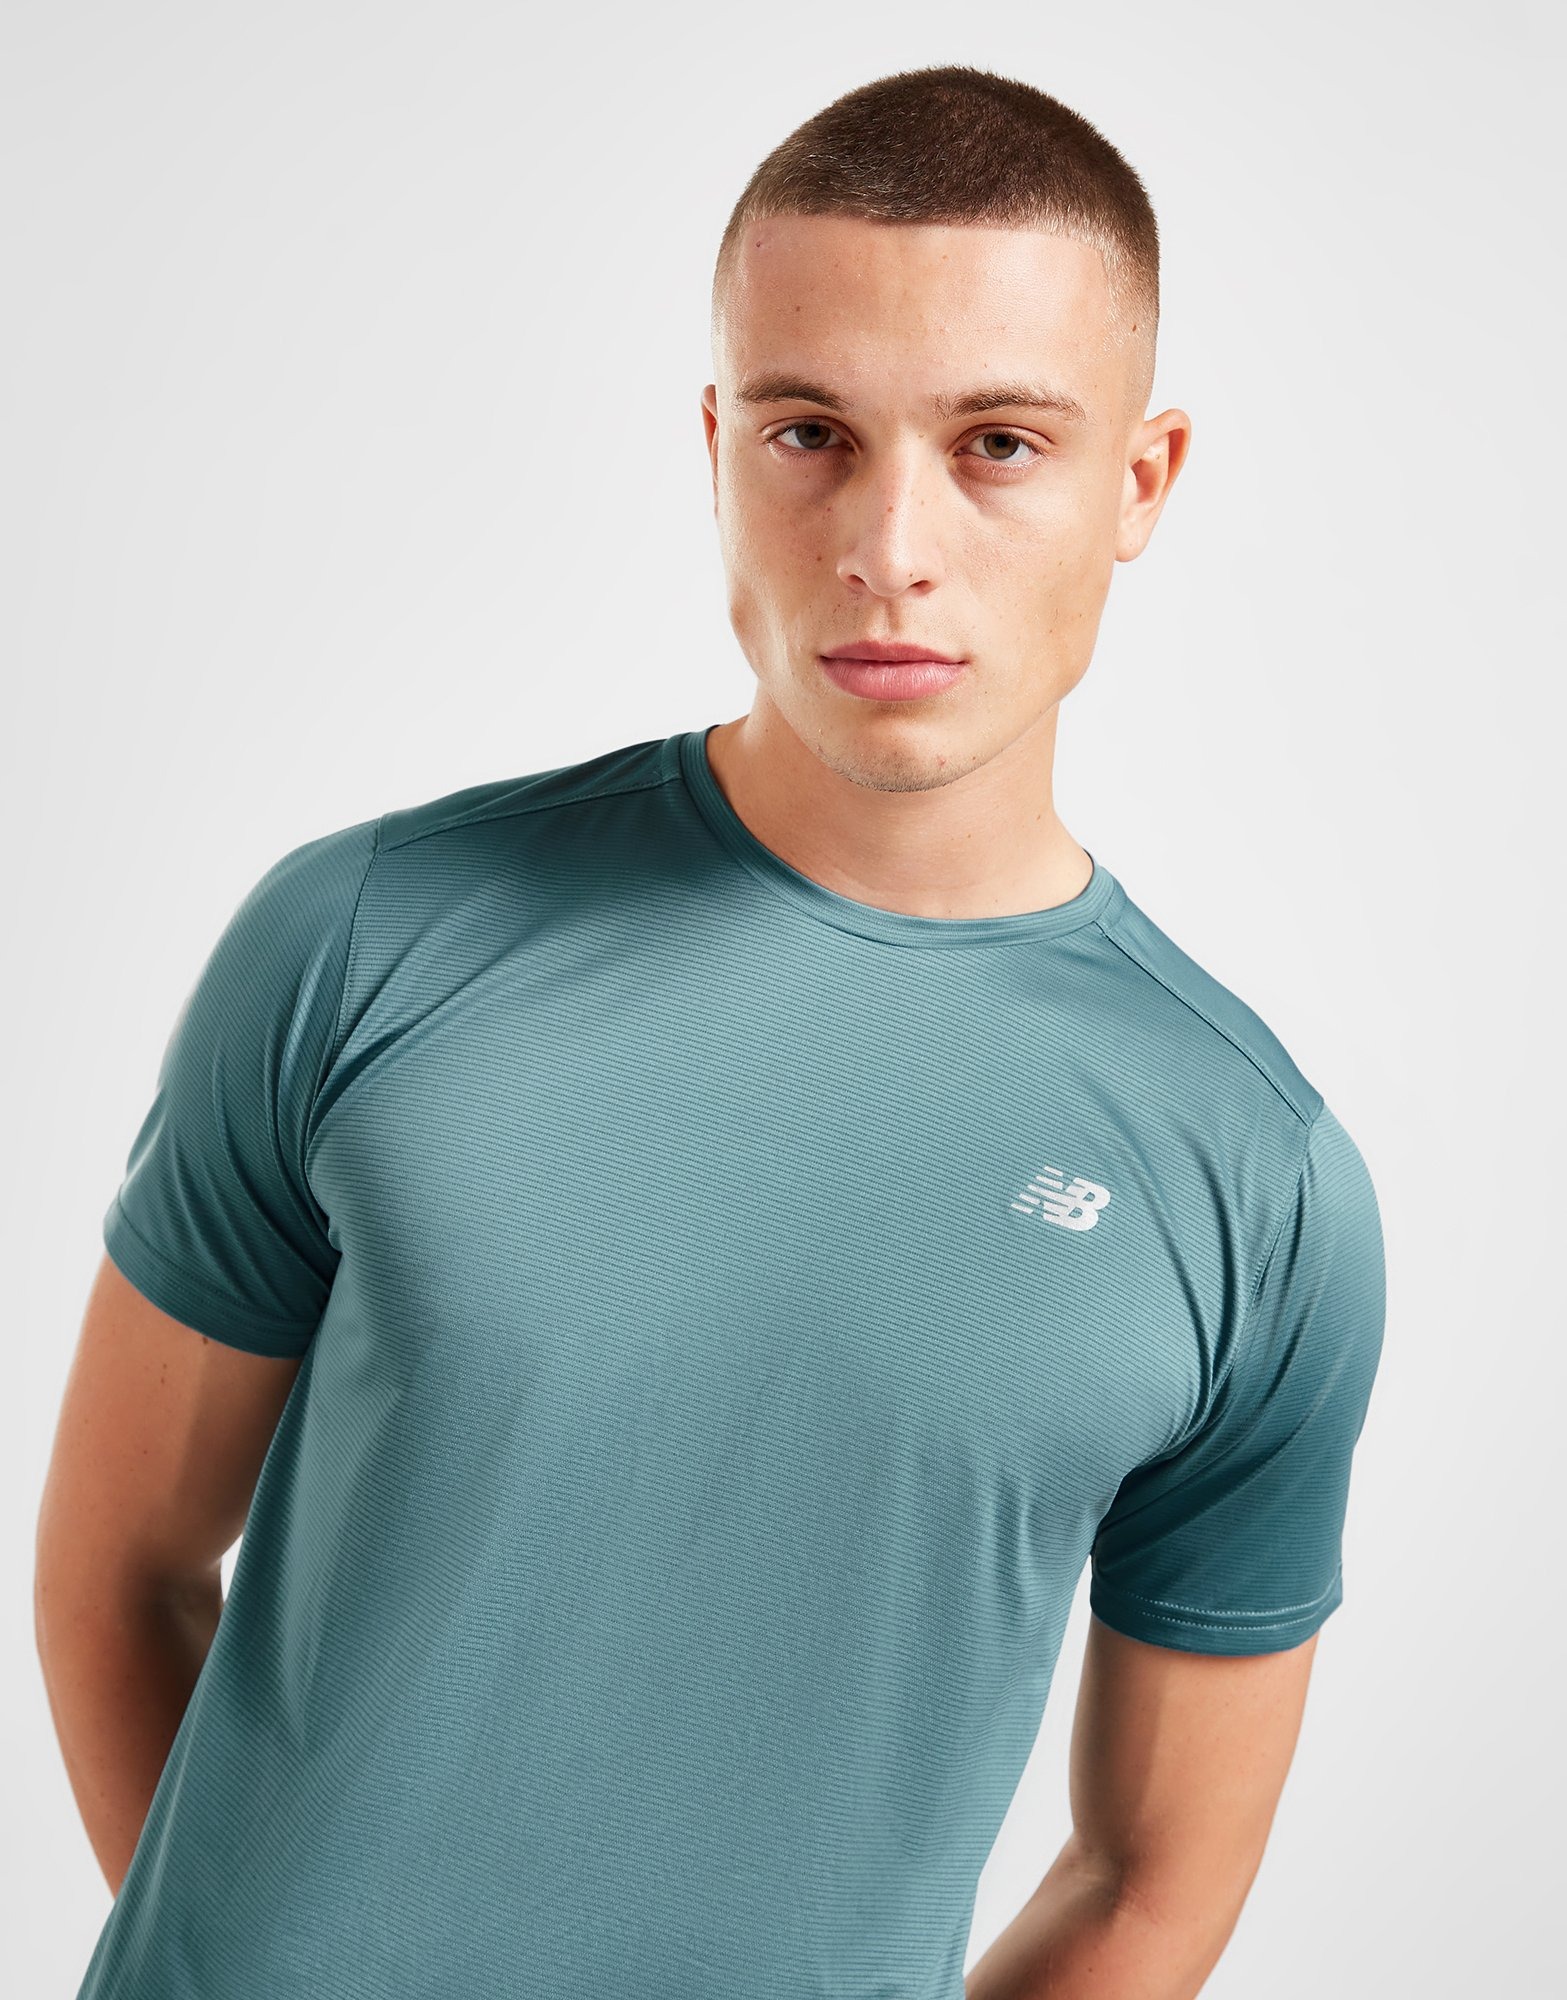 Homme Vêtements Articles de sport et dentraînement Sweats Sweat-shirt Synthétique Superdry pour homme en coloris Vert 